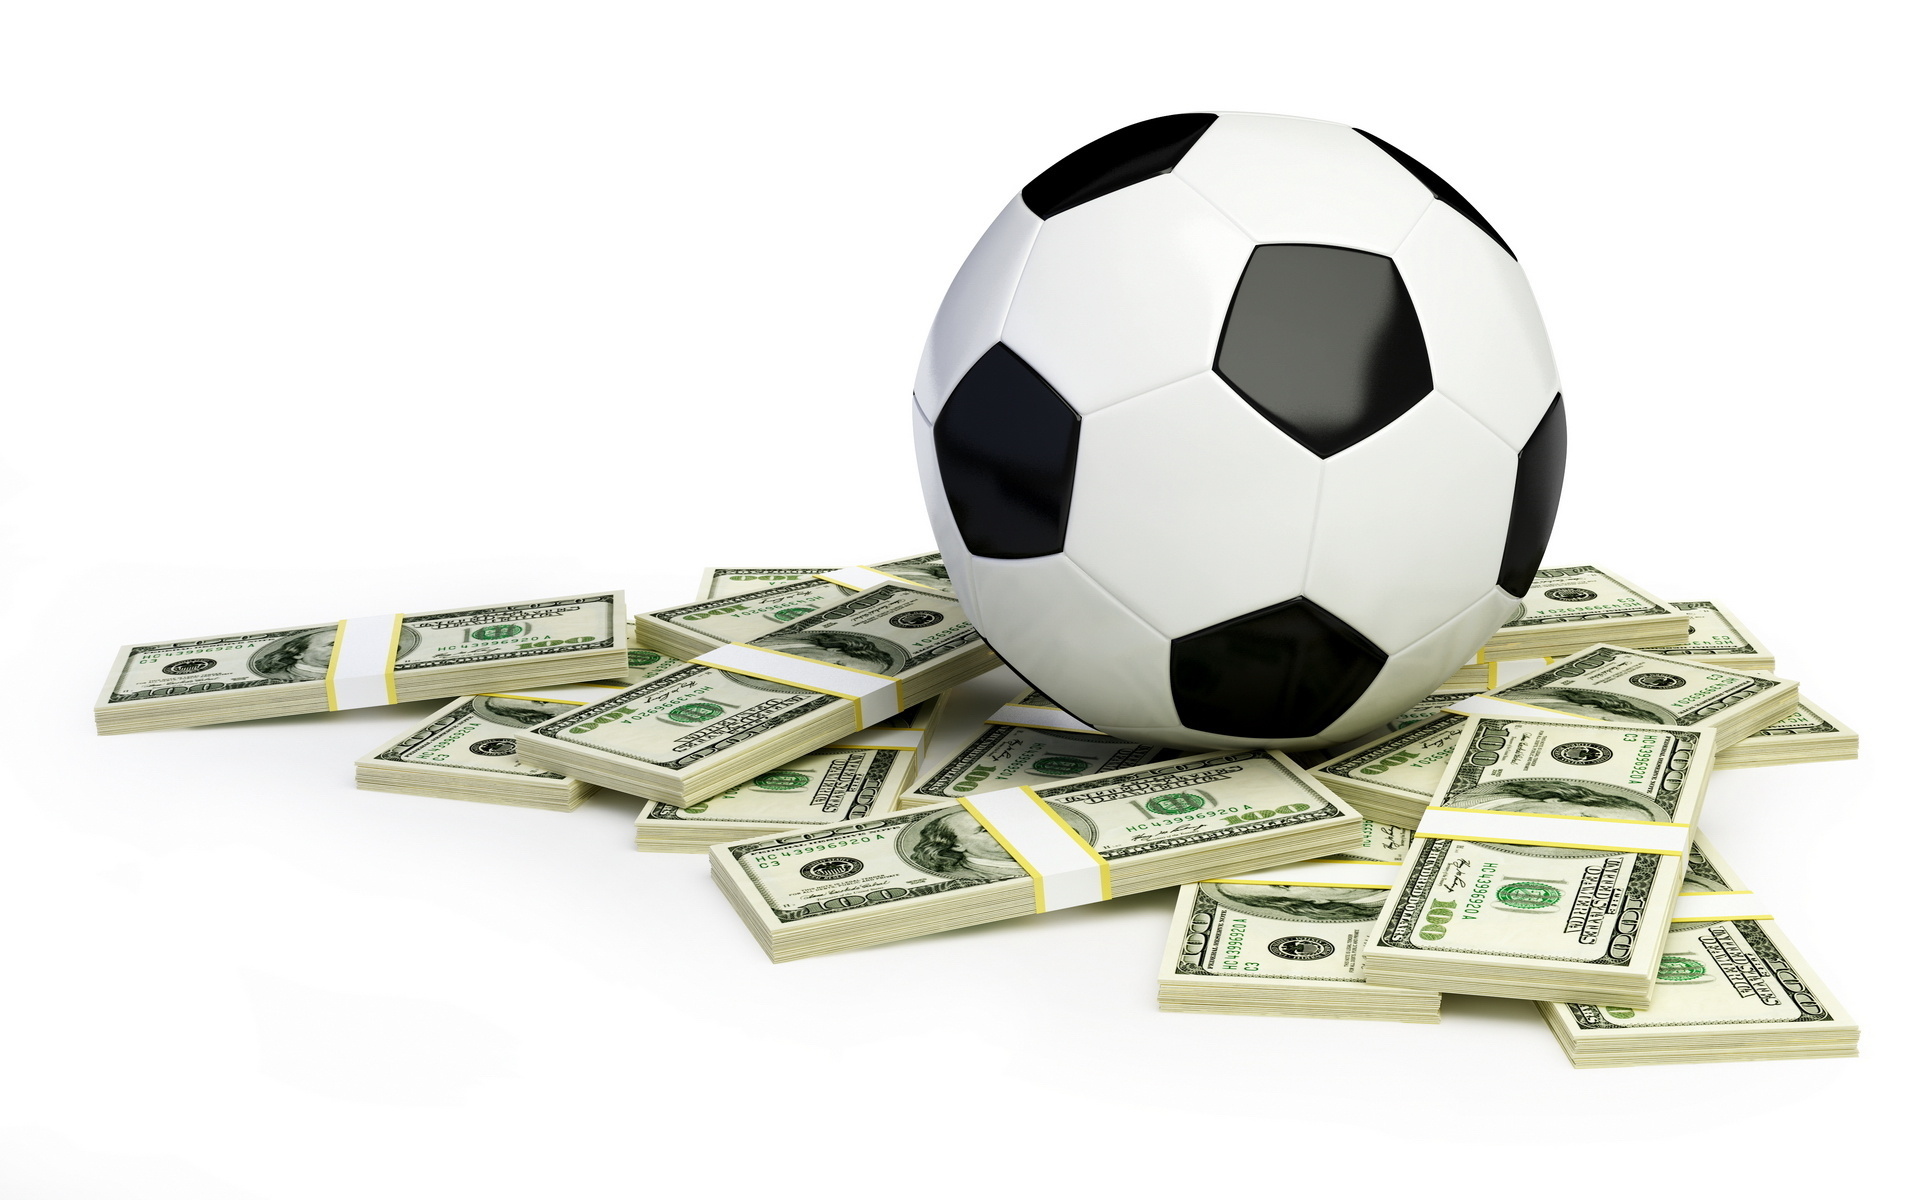 سری مقالات تخصصی تجارت فوتبال (قسمت سوم: تشریح هزینه ها و درآمدهای باشگاه فوتبال بارسلونا)